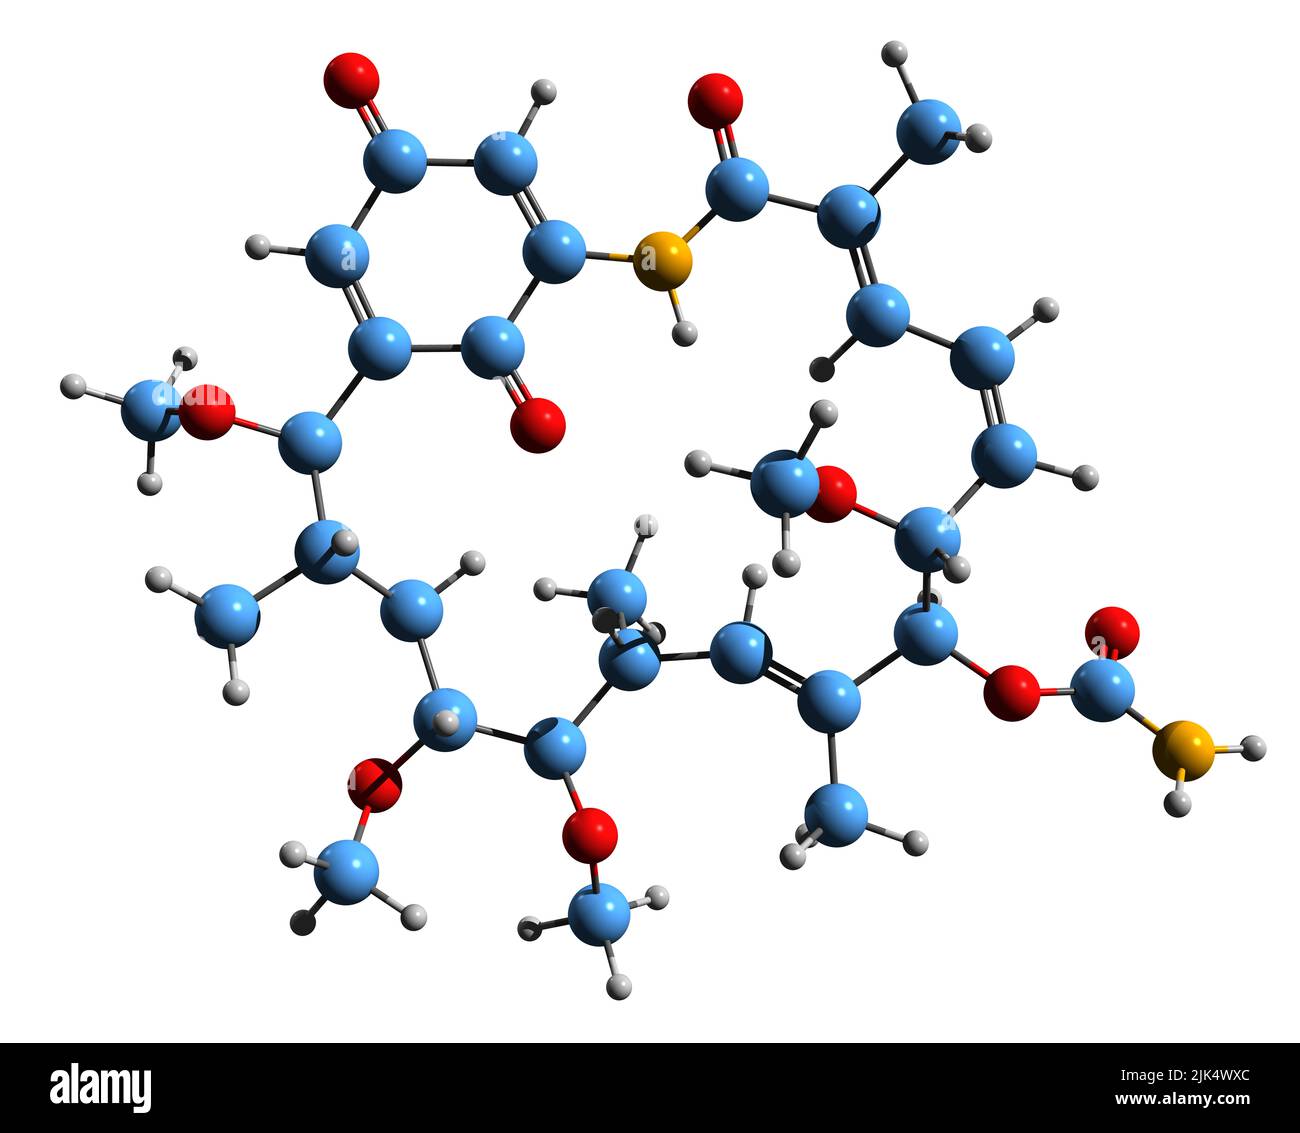 3D Bild der Herbimycin-Skelettformel - molekulare chemische Struktur des Benzochinon-Ansamycin-Antibiotikums, isoliert auf weißem Hintergrund Stockfoto